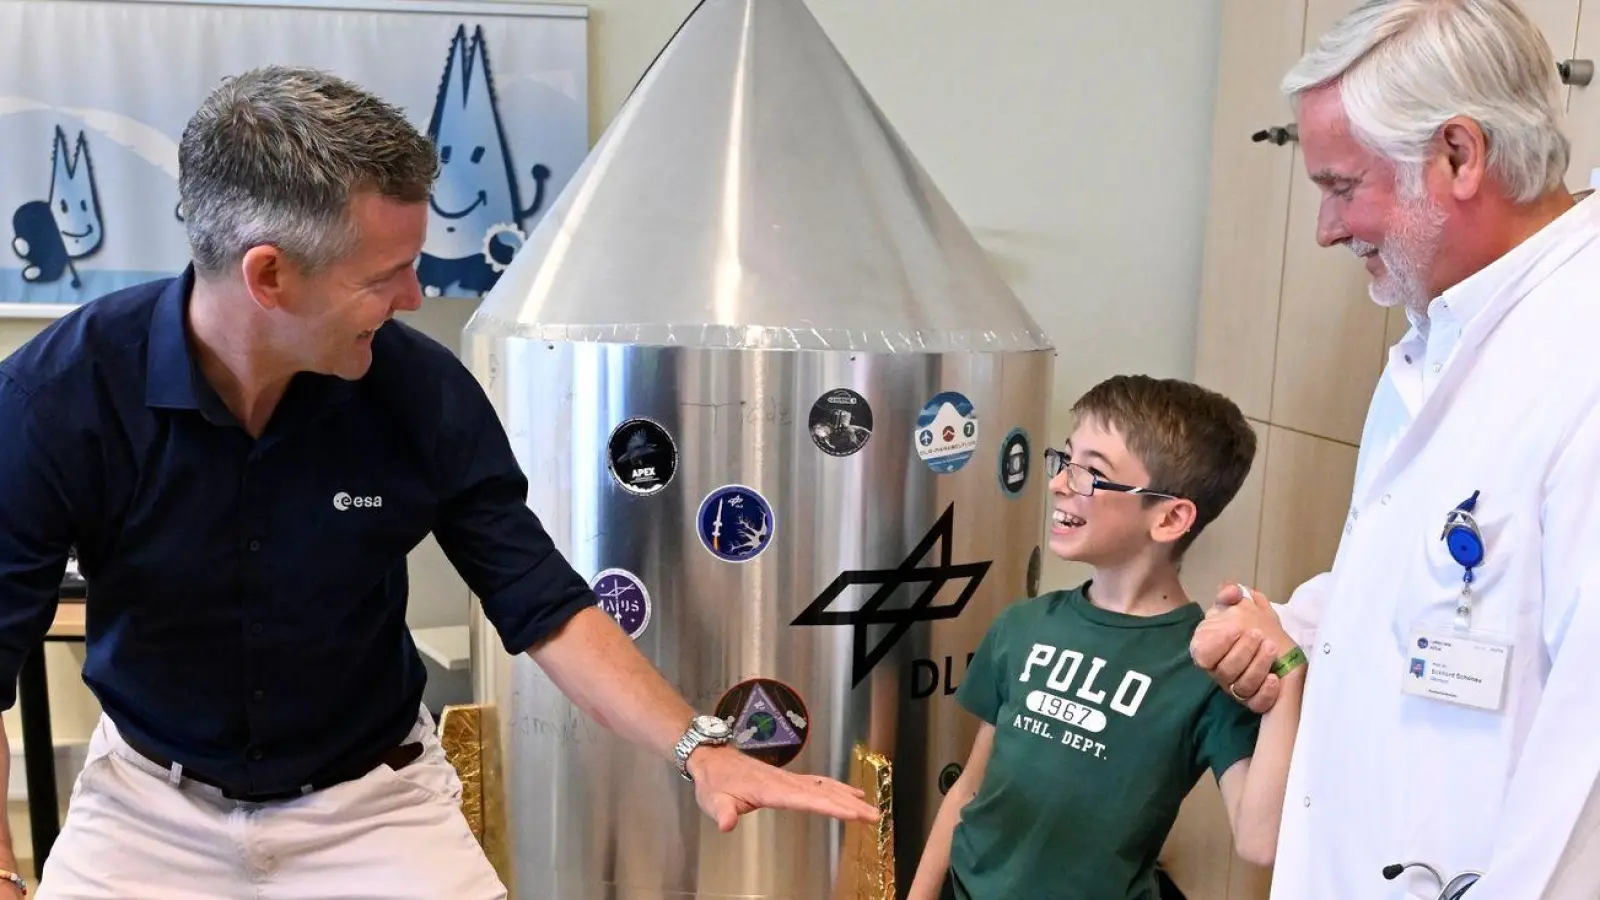 Der behinderte Astronaut John McFall möchte ein Vorbild für Kinder sein. (Foto: Roberto Pfeil/dpa)